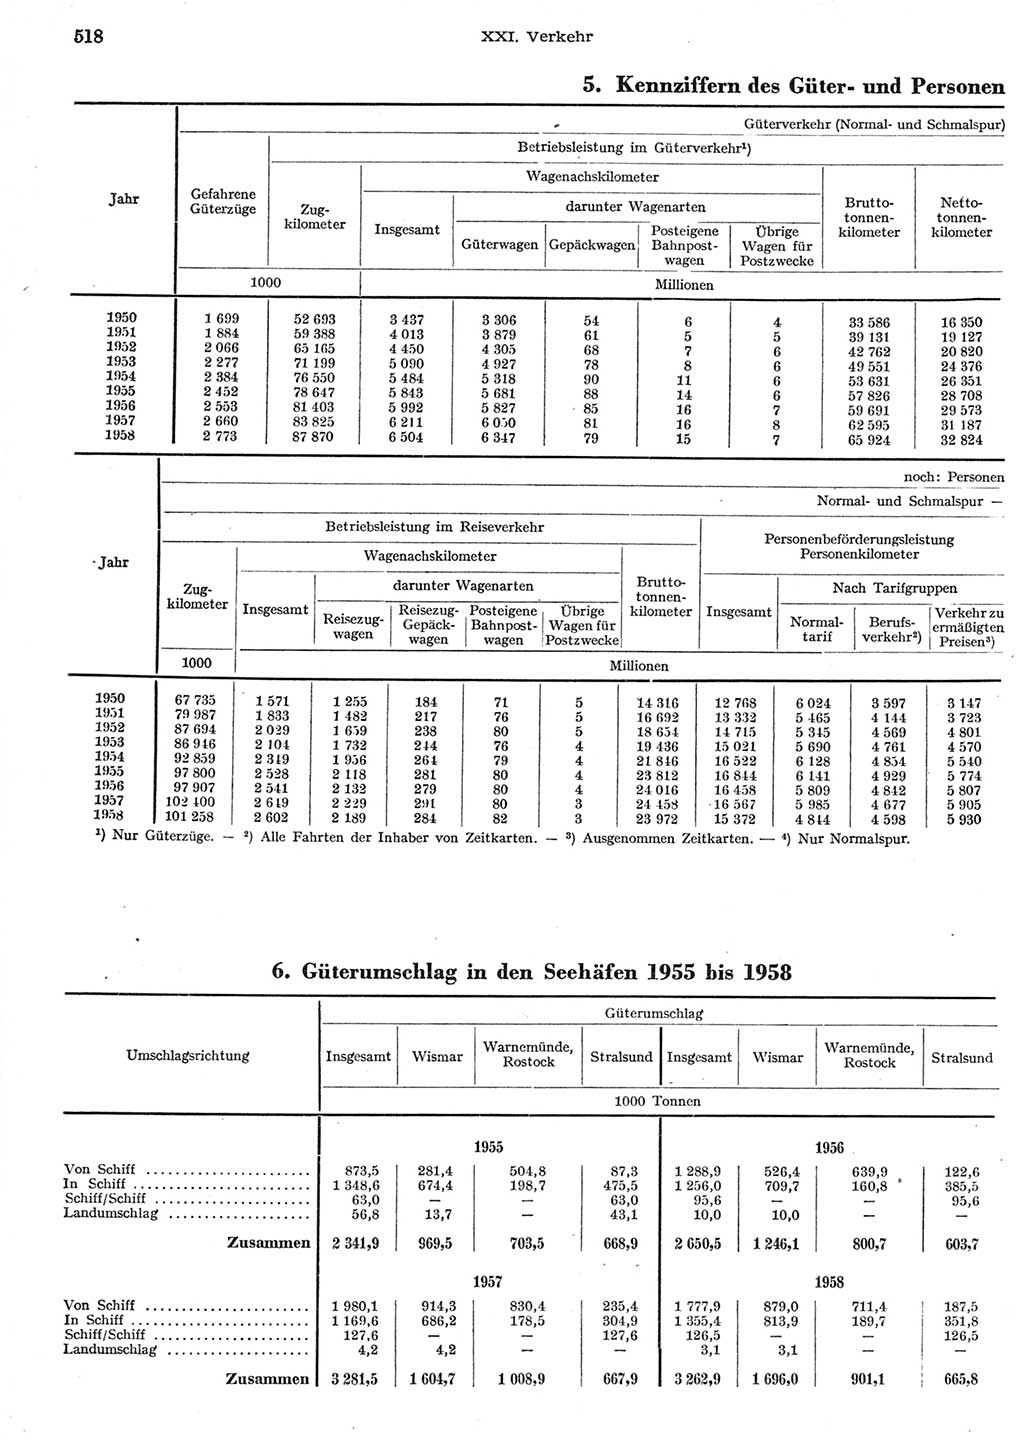 Statistisches Jahrbuch der Deutschen Demokratischen Republik (DDR) 1958, Seite 518 (Stat. Jb. DDR 1958, S. 518)